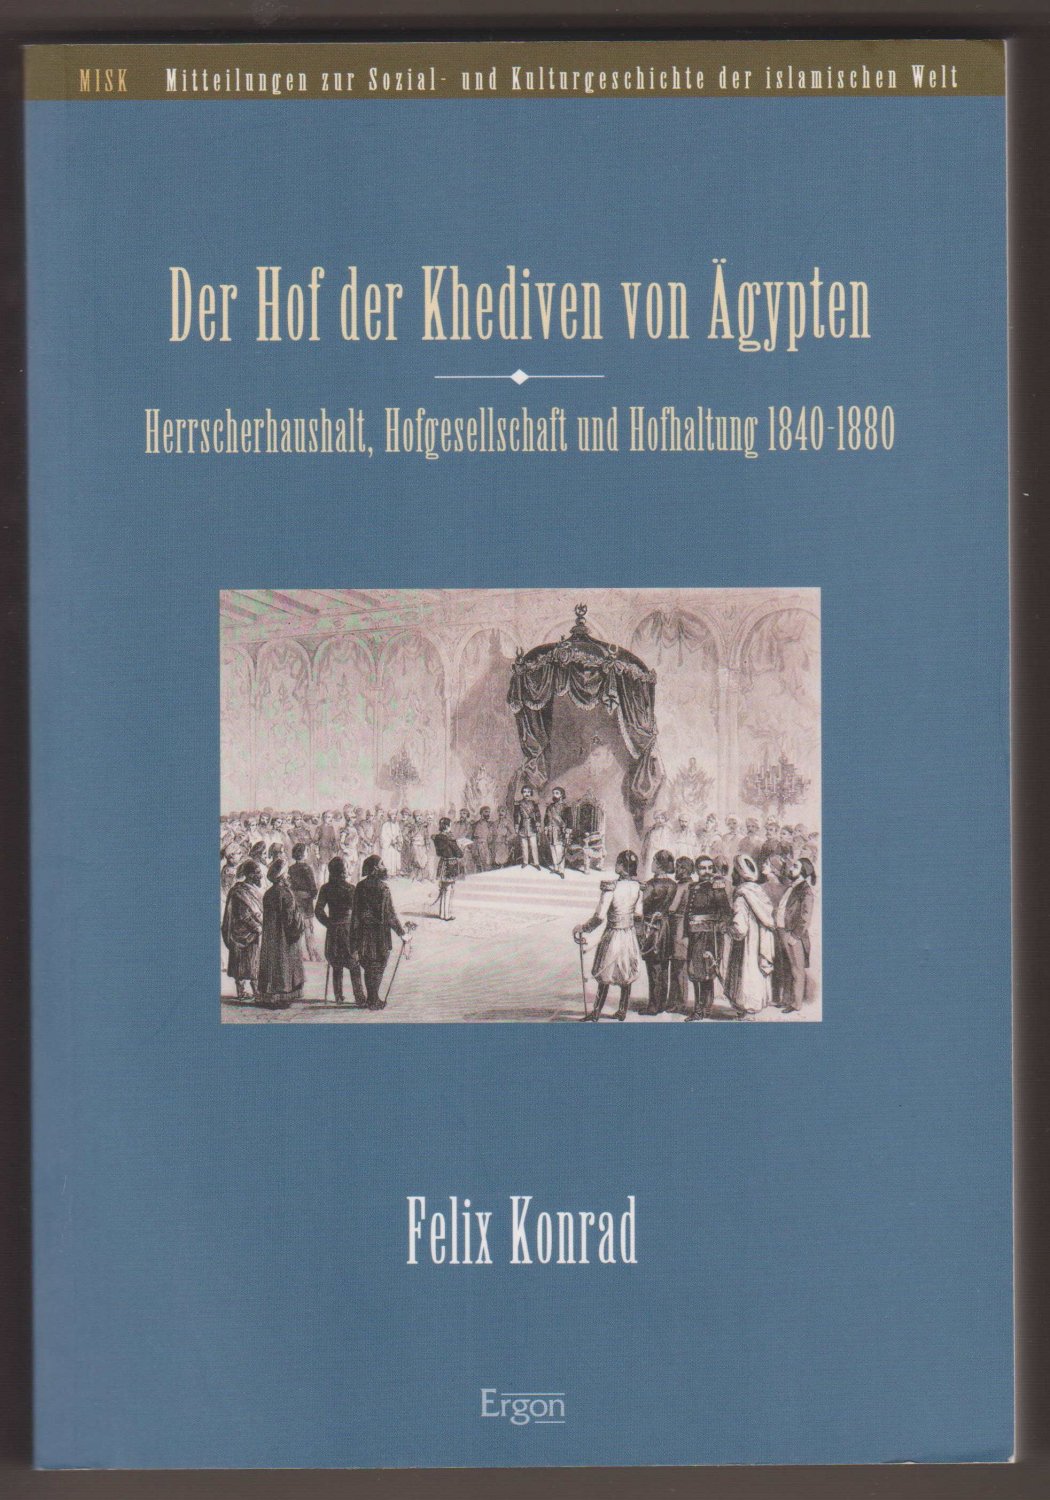 Der Hof der Khediven von Ägypten. Herrscherhaushalt, Hofgesellschaft und Hofhaltung 1840-1880. - KONRAD, Felix